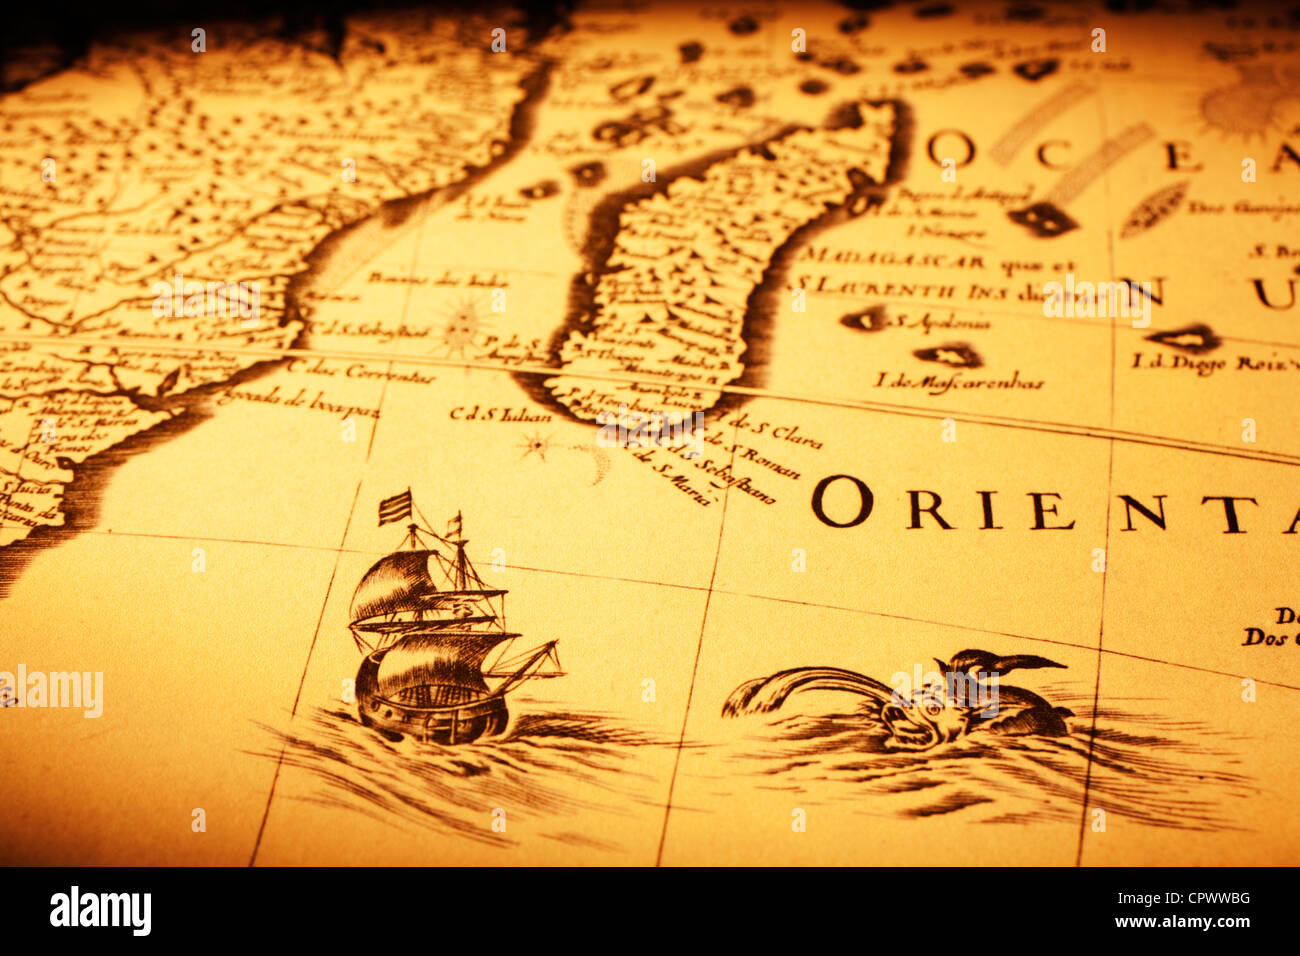 Dettaglio di una vecchia mappa che mostra una nave al largo del Madagascar, un mostro marino e la costa dell'Africa. Foto Stock